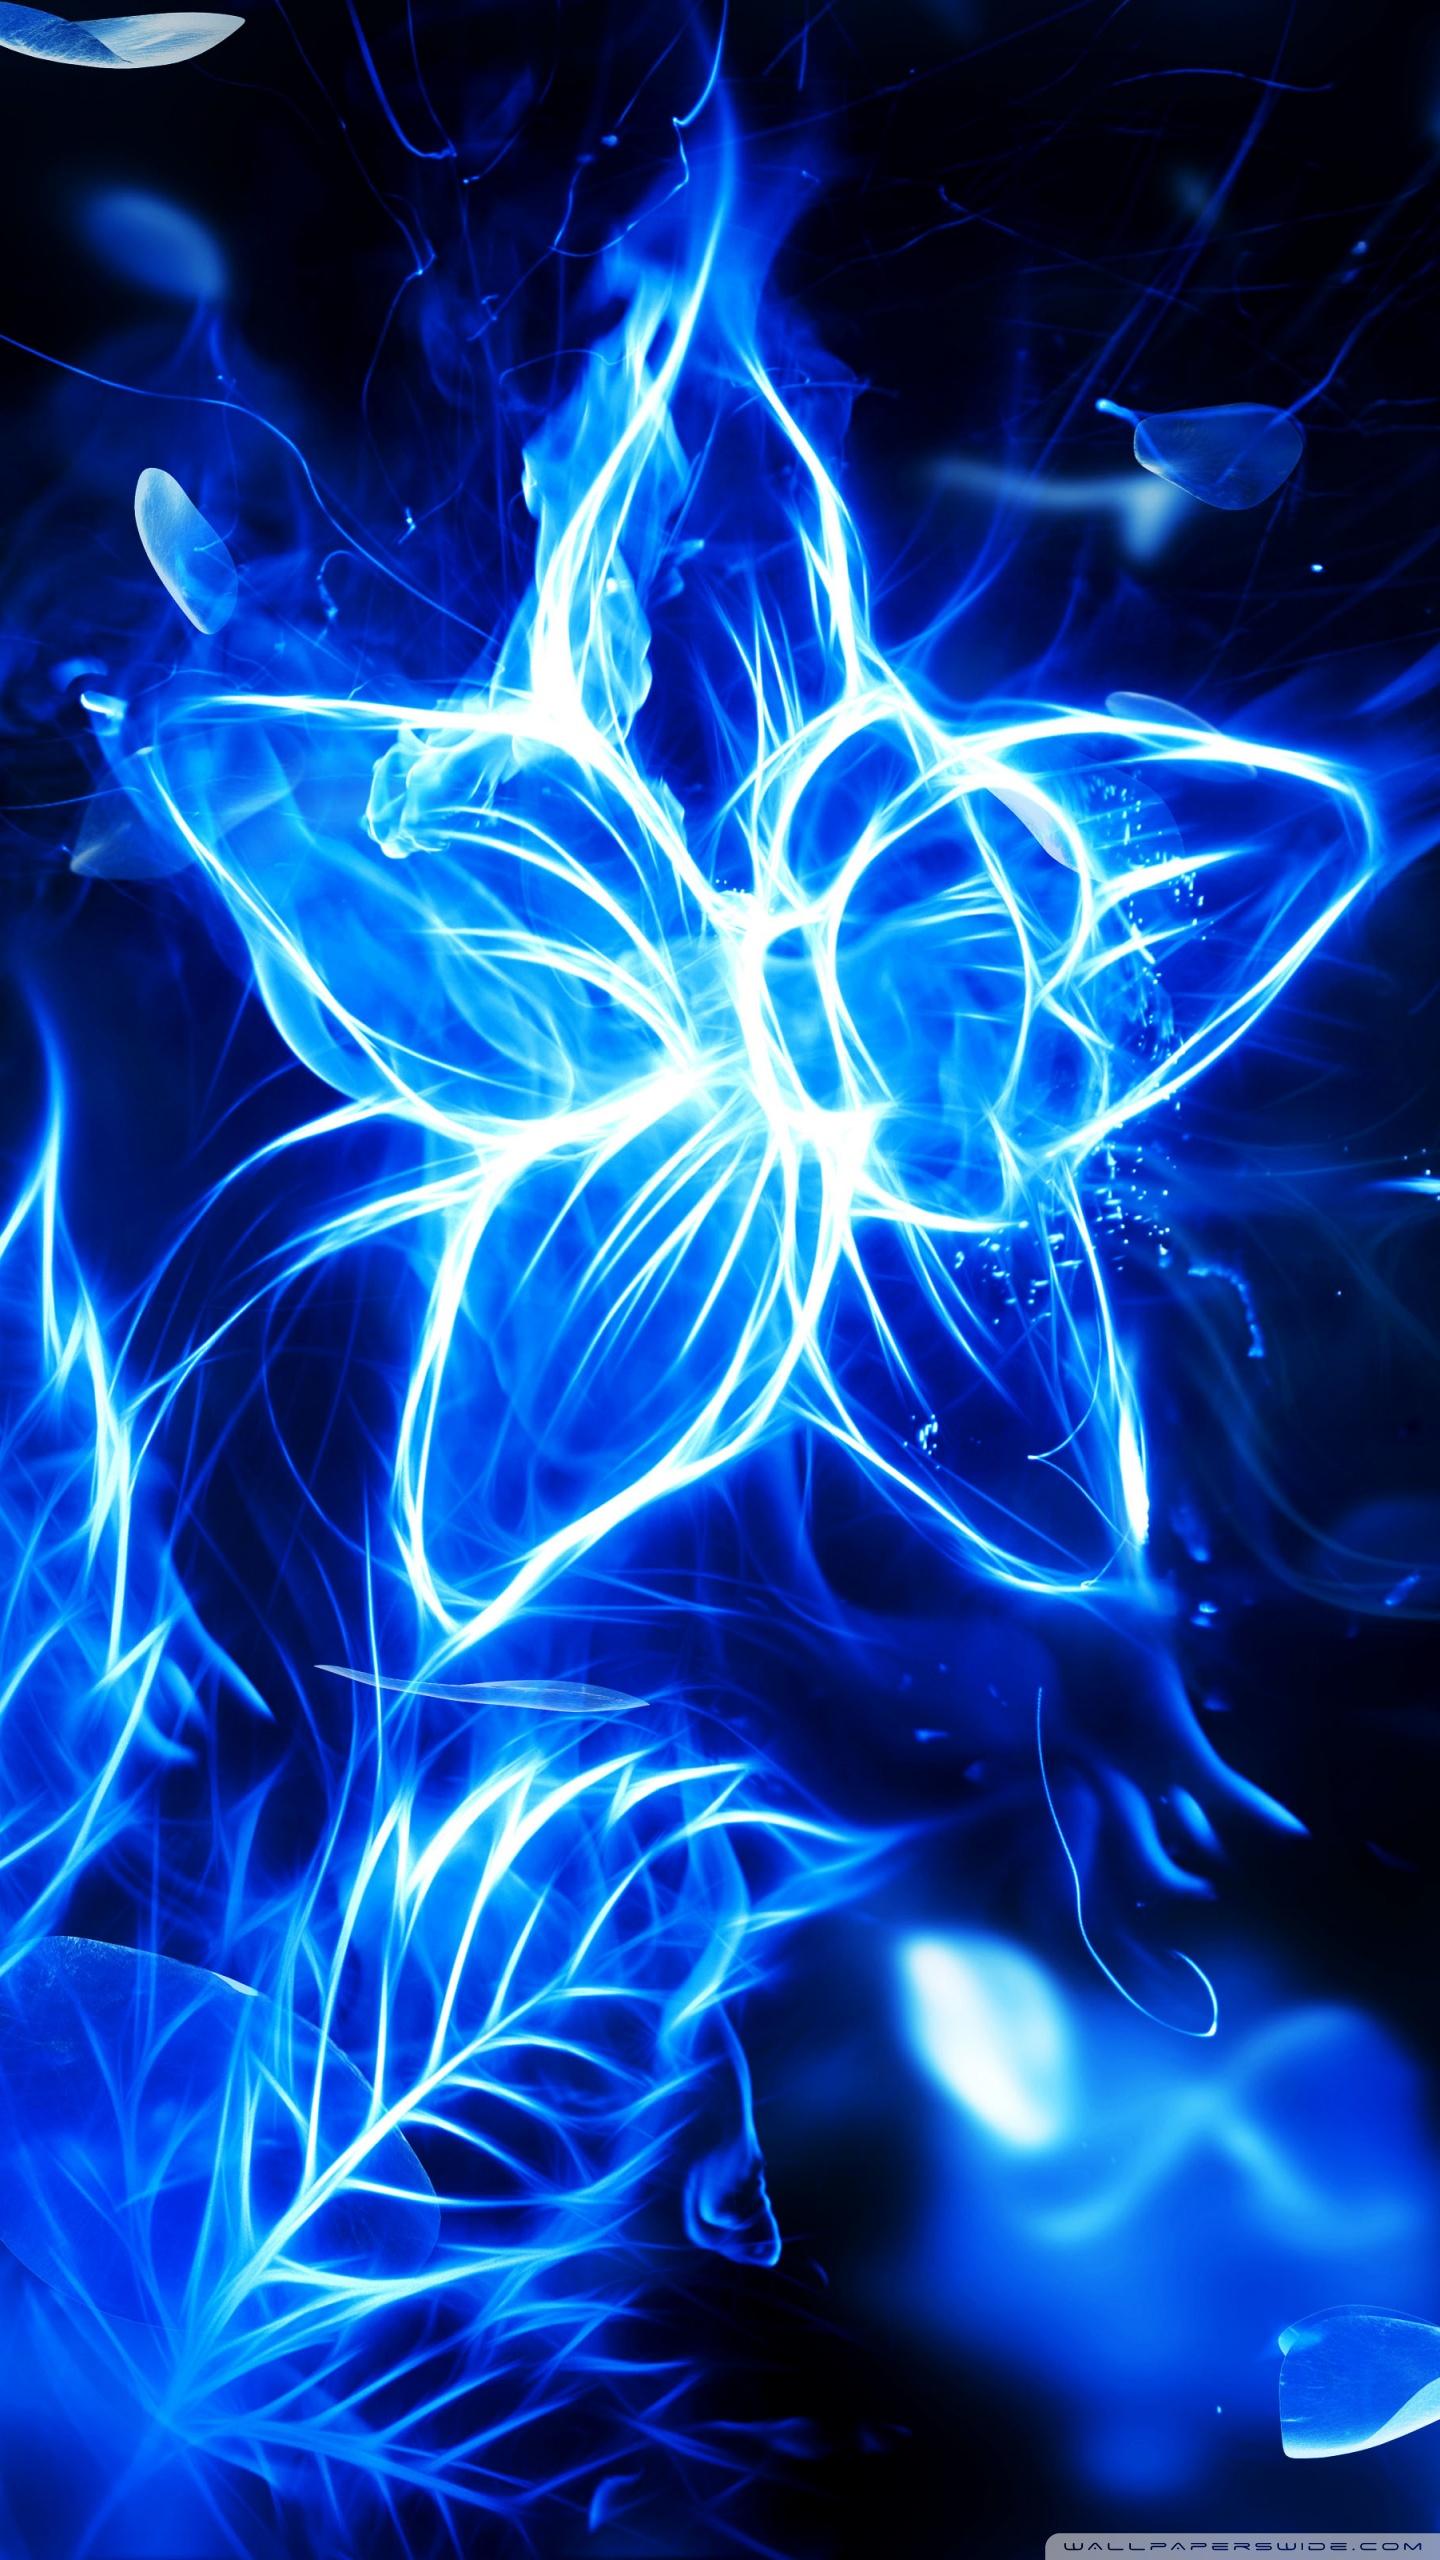 Blue Fire Flower 4K HD Desktop Wallpaper for 4K Ultra HD TV. 10